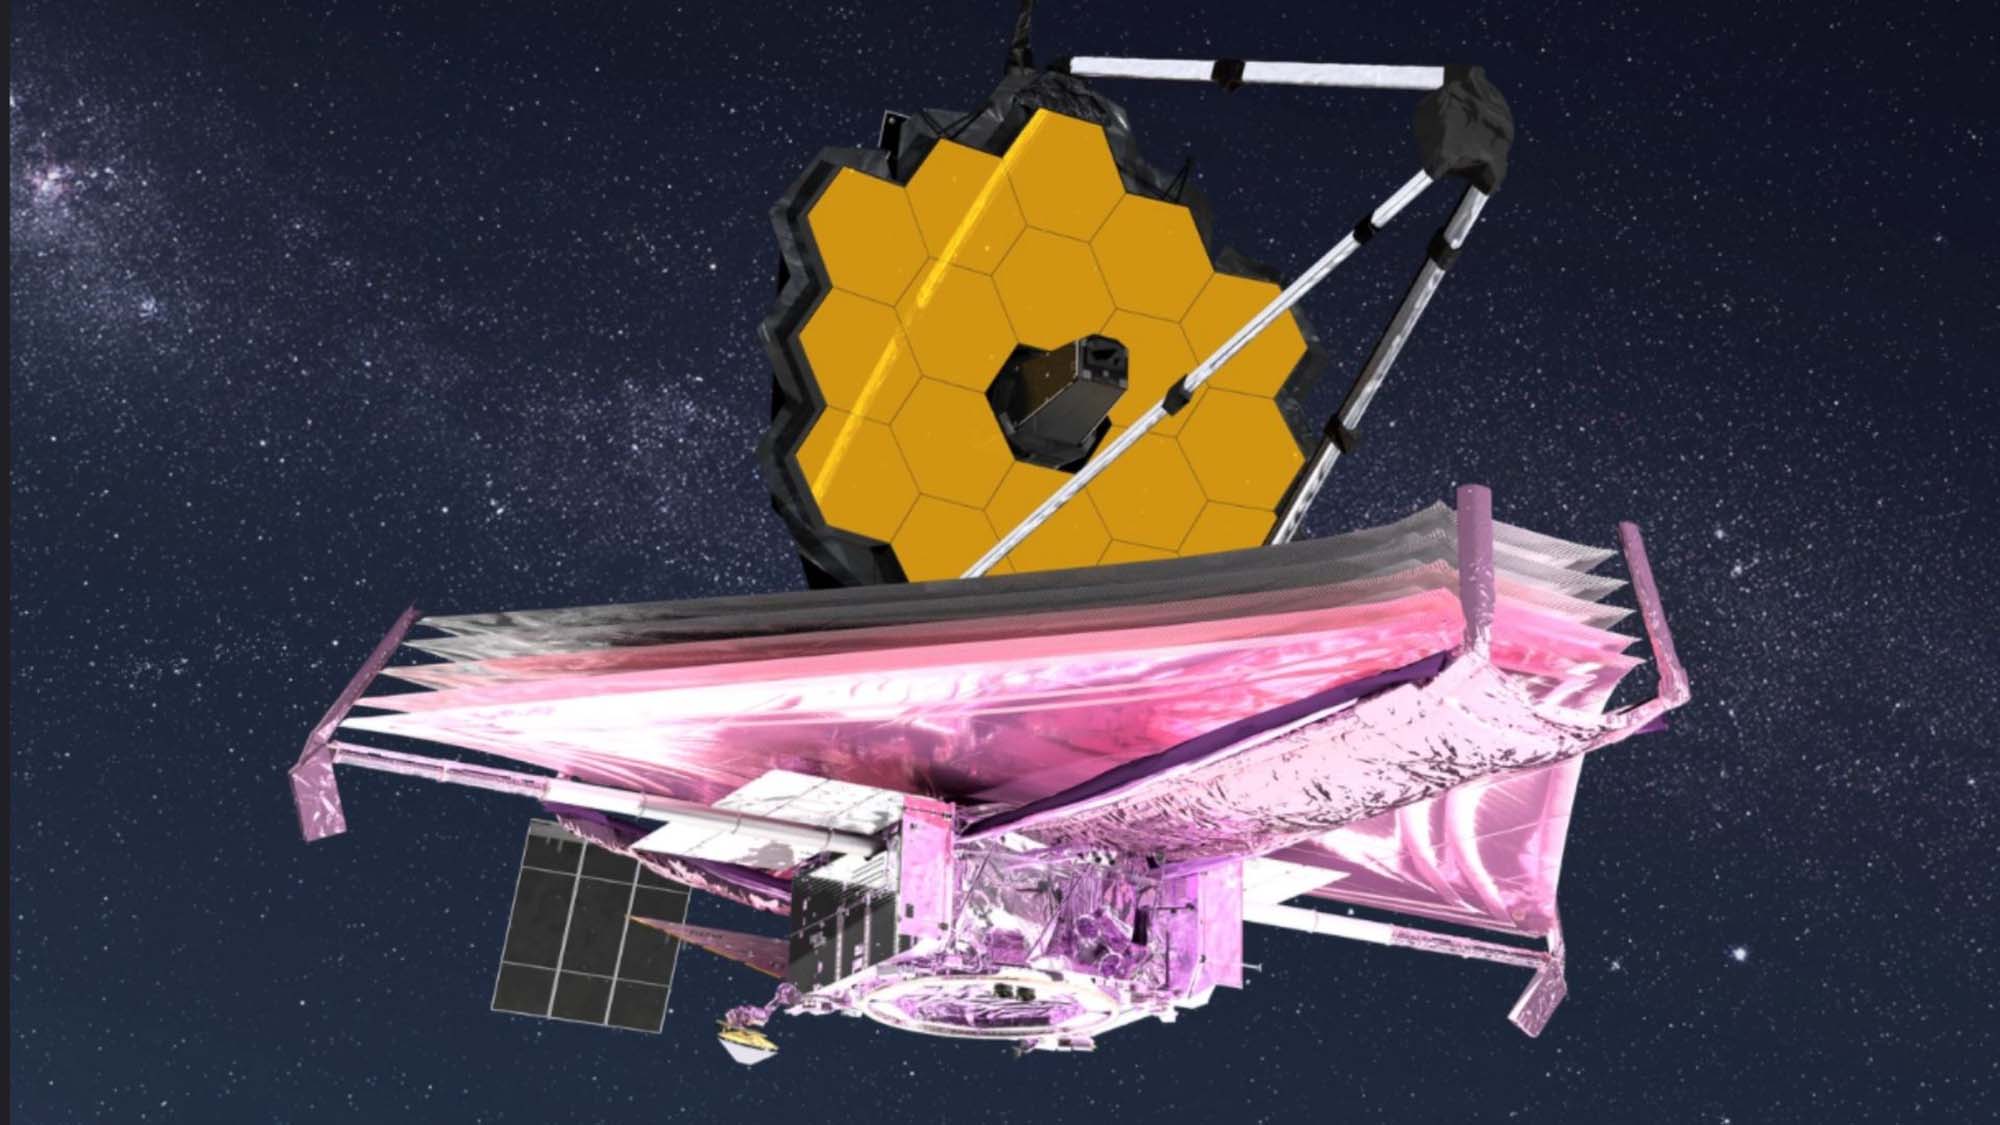 Konsepsi seorang seniman tentang James Webb Space Telescope di luar angkasa.